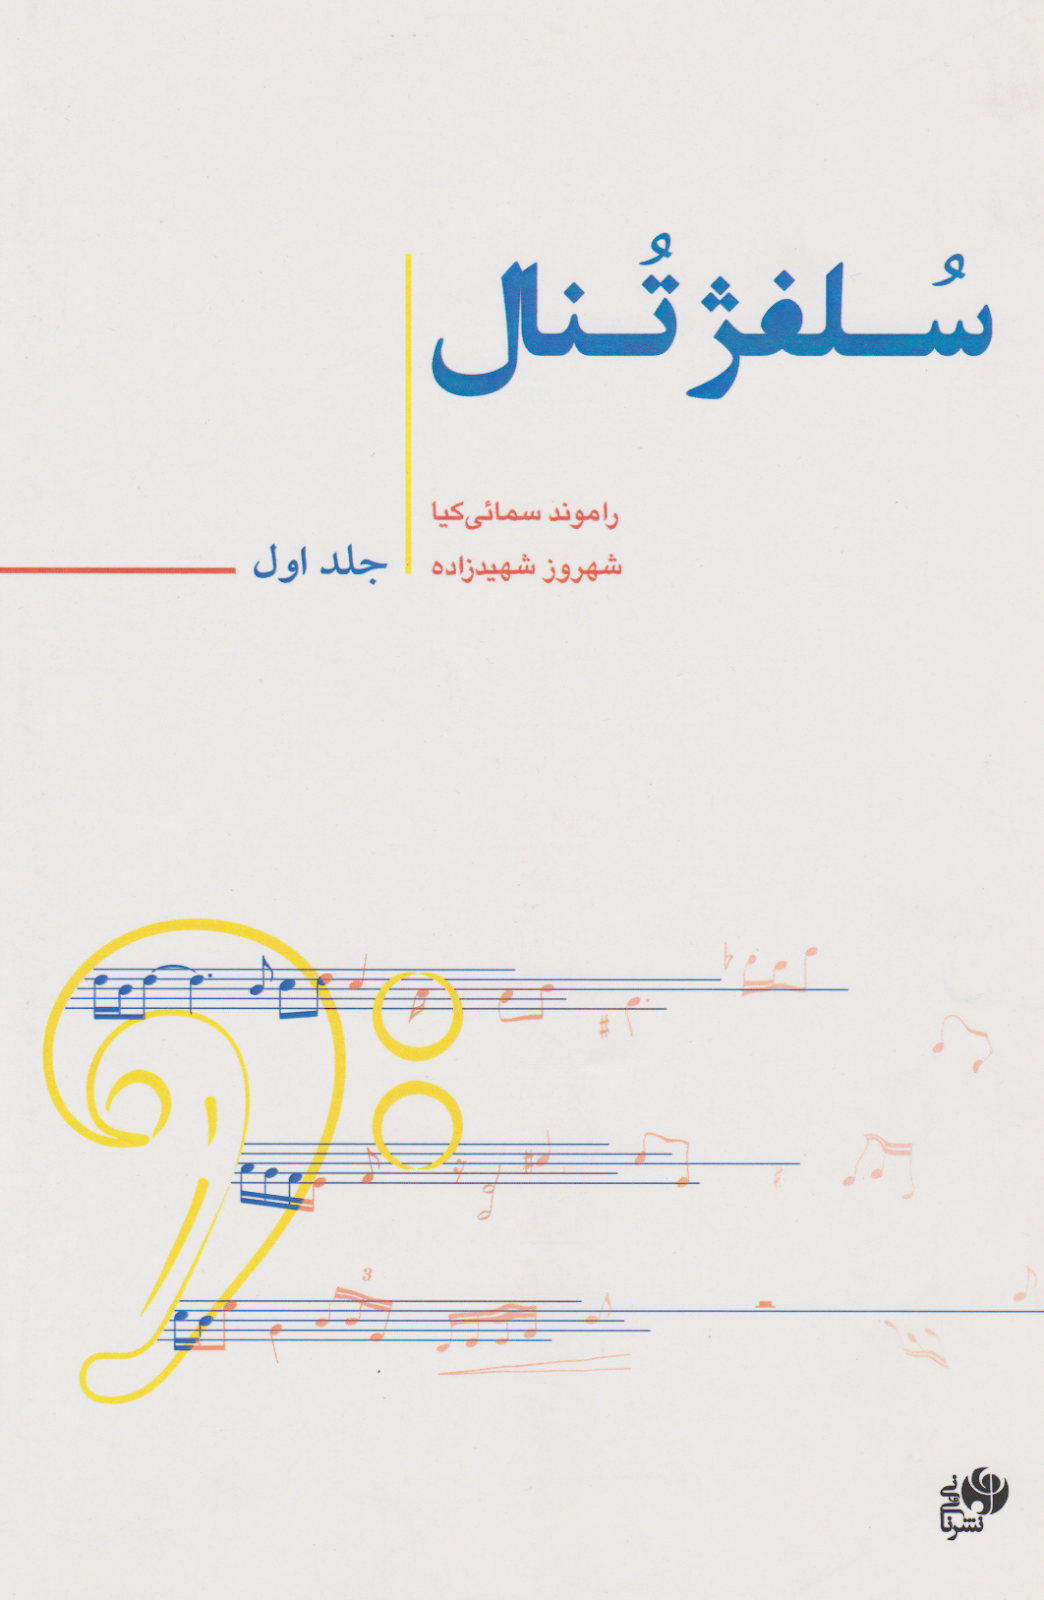 کتاب اول سلفژ تنال راموند سمائی‌کیا شهروز شهیدزاده